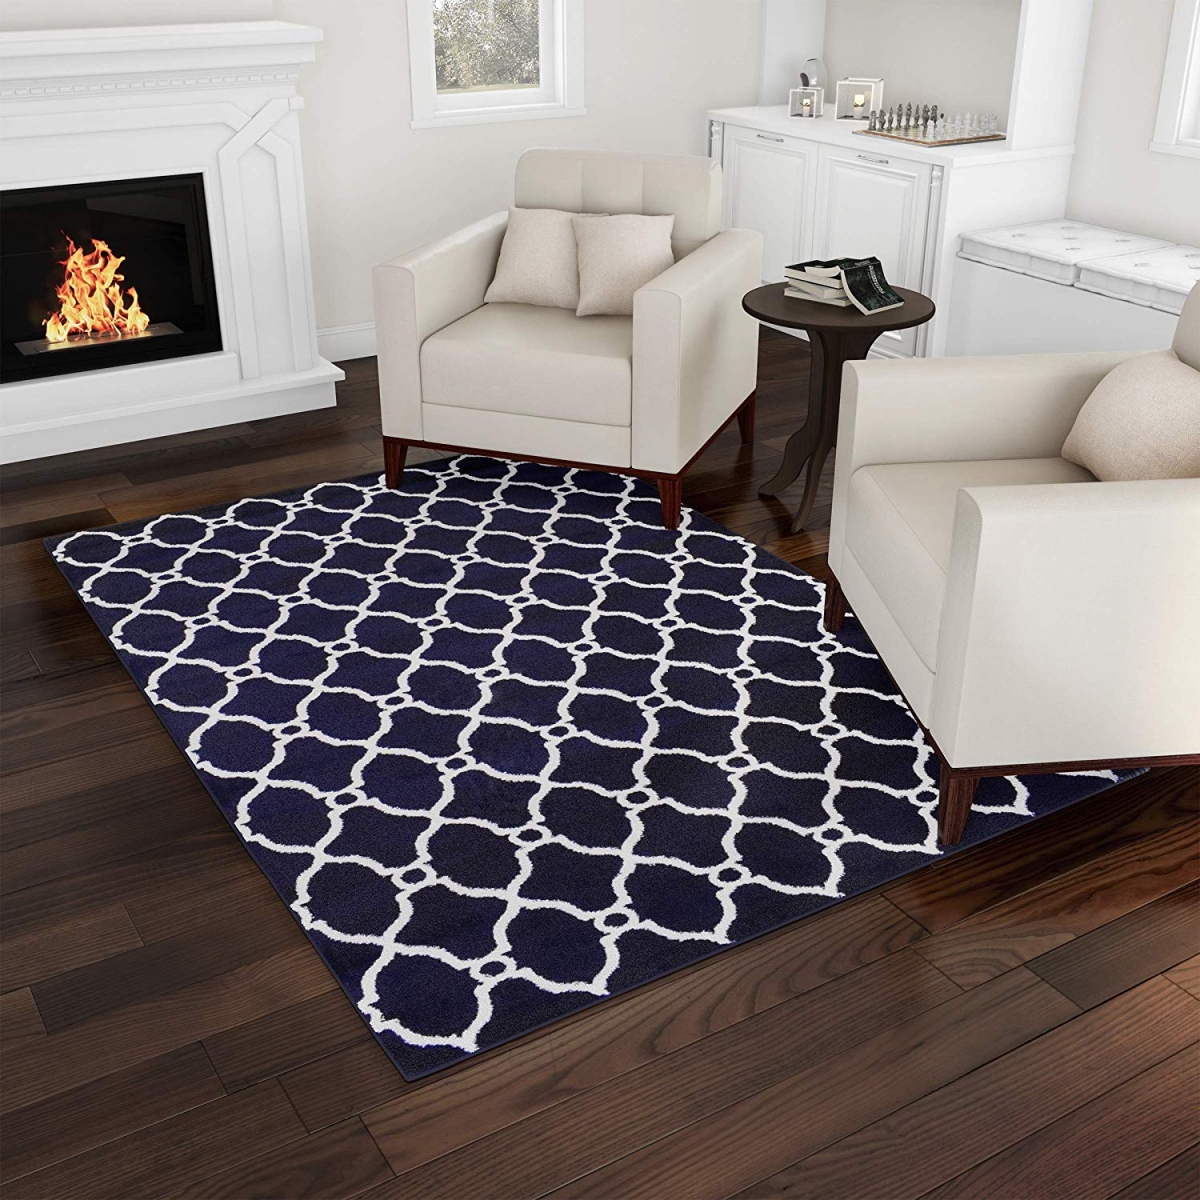 62a-80644 5 X 7 Ft. Bedford Home Lattice Area Rug Plush Throw Carpet, Navy & White